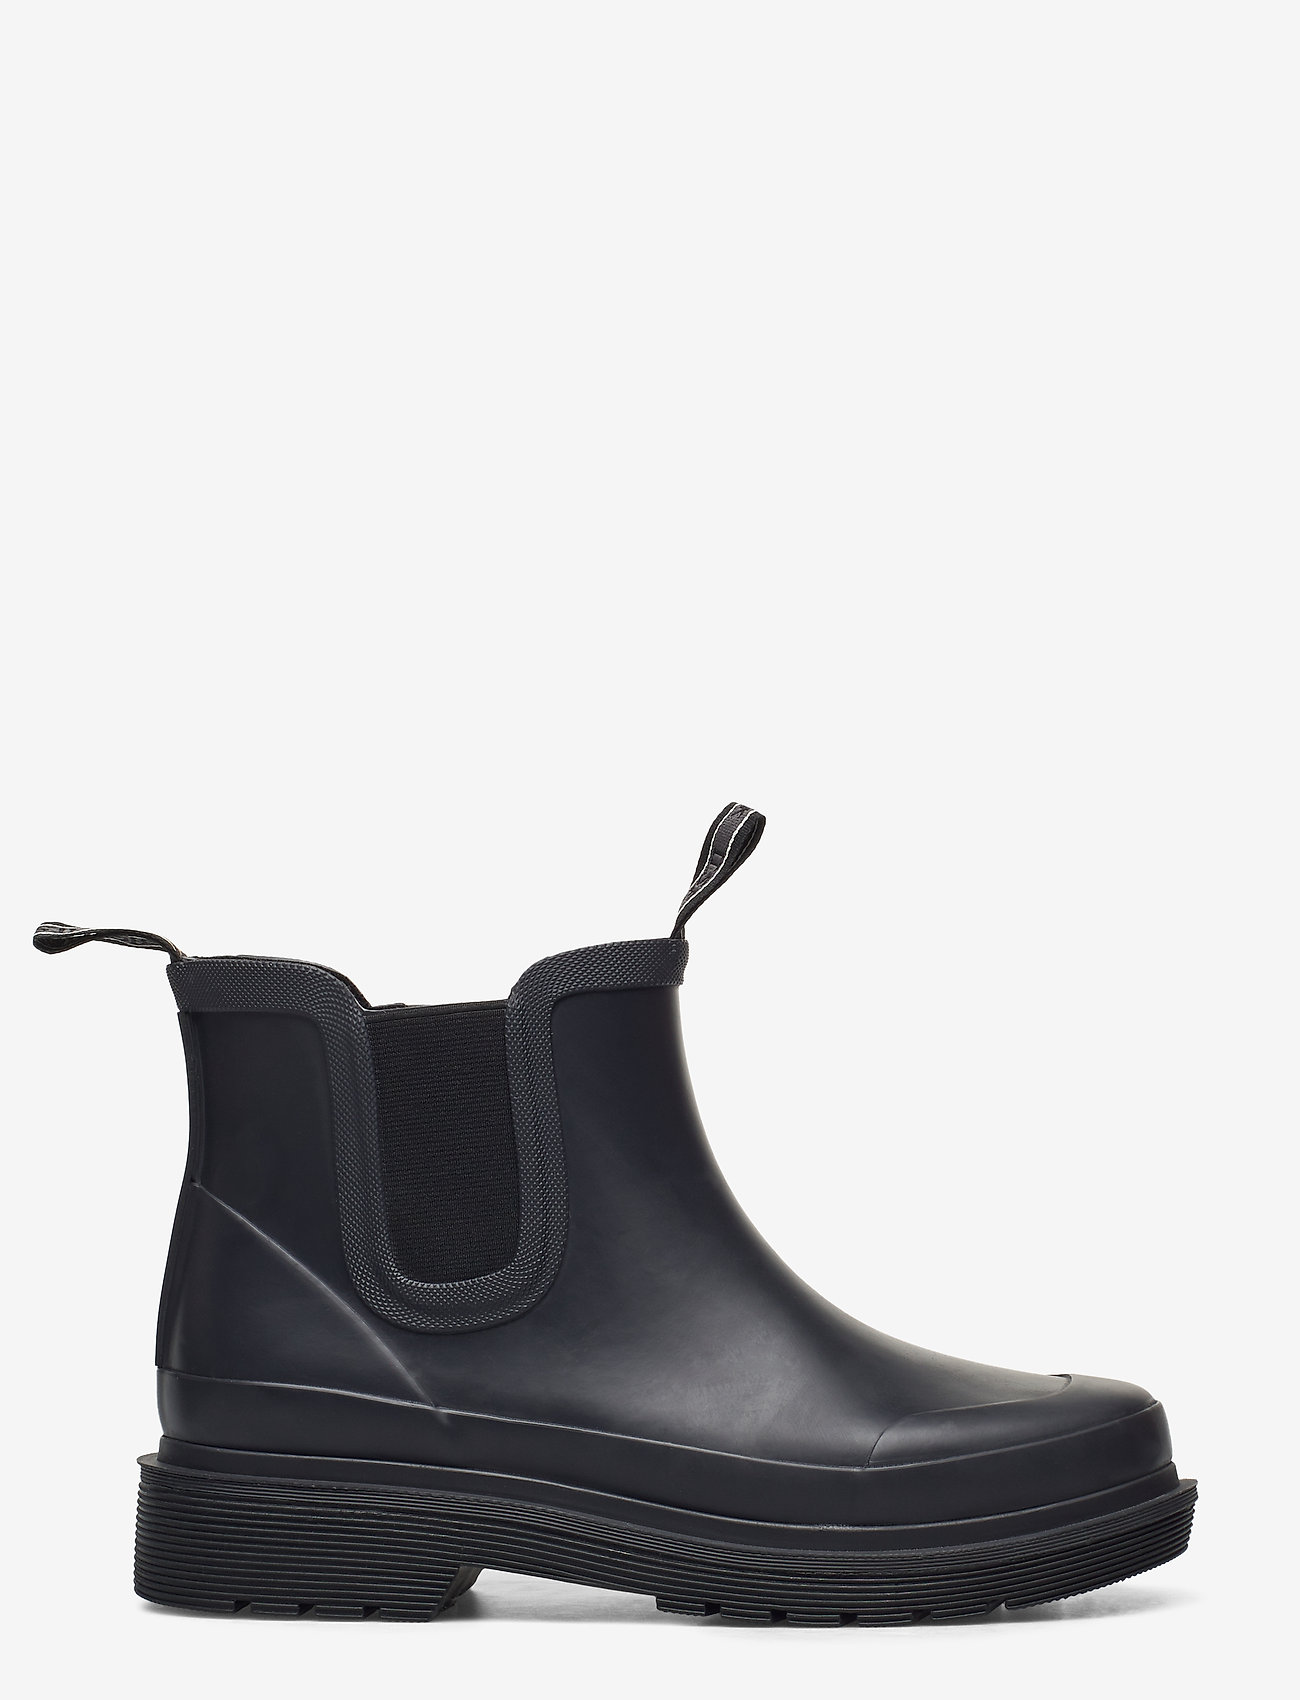 Ilse Jacobsen - Rubber boots ankel - women - black - 1